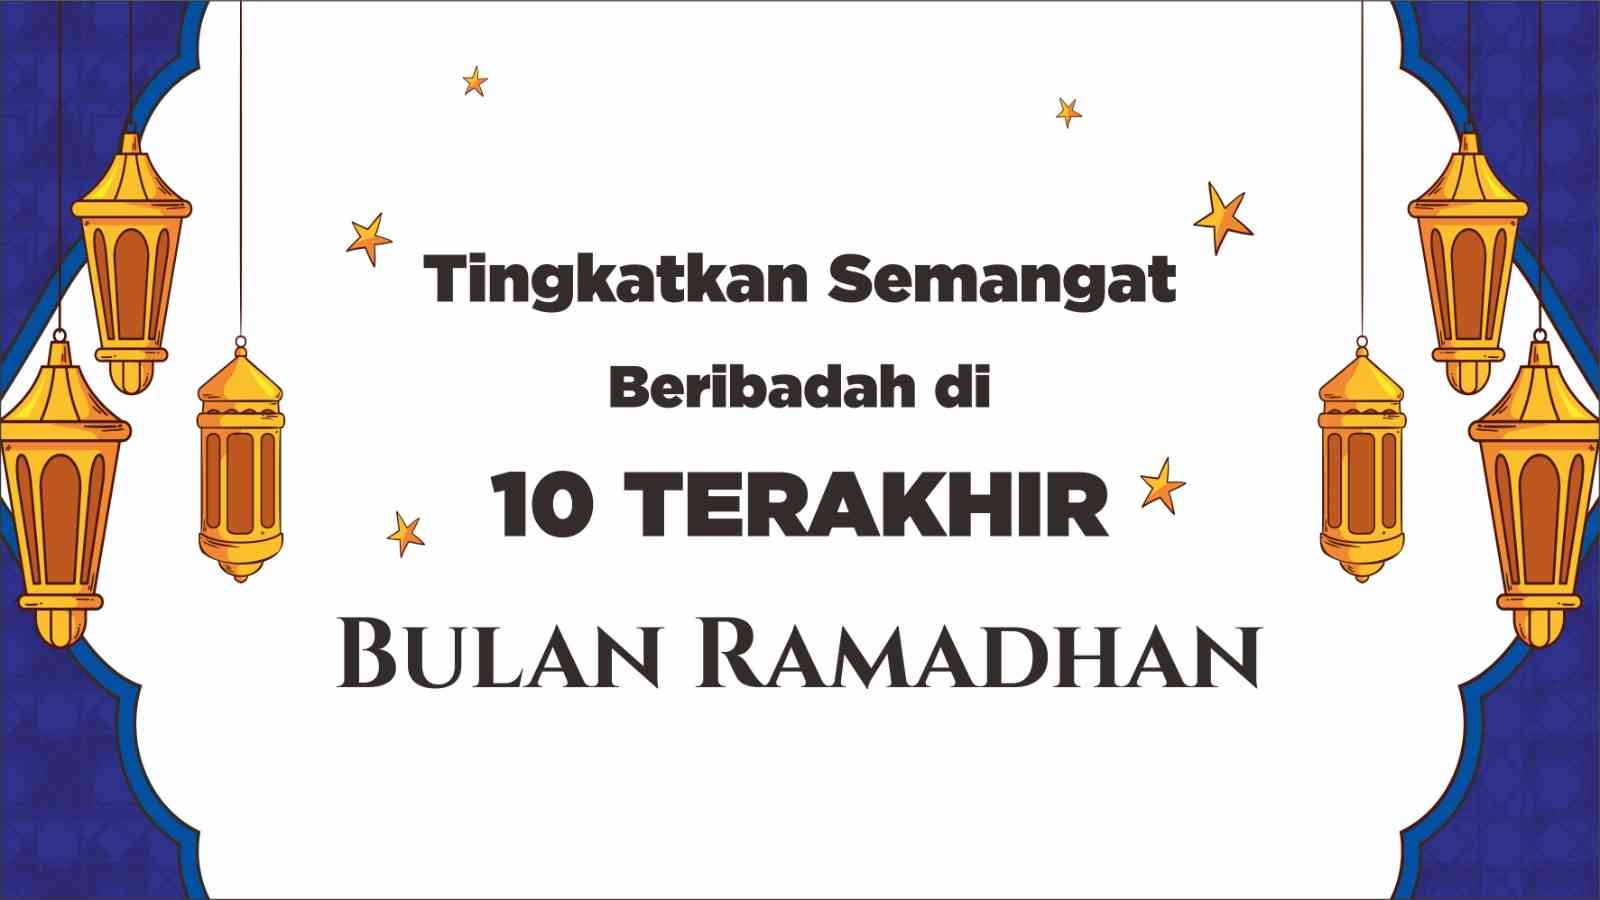 Tingkatkan Semangat Beribadah di 10 Terakhir Bulan Ramadhan